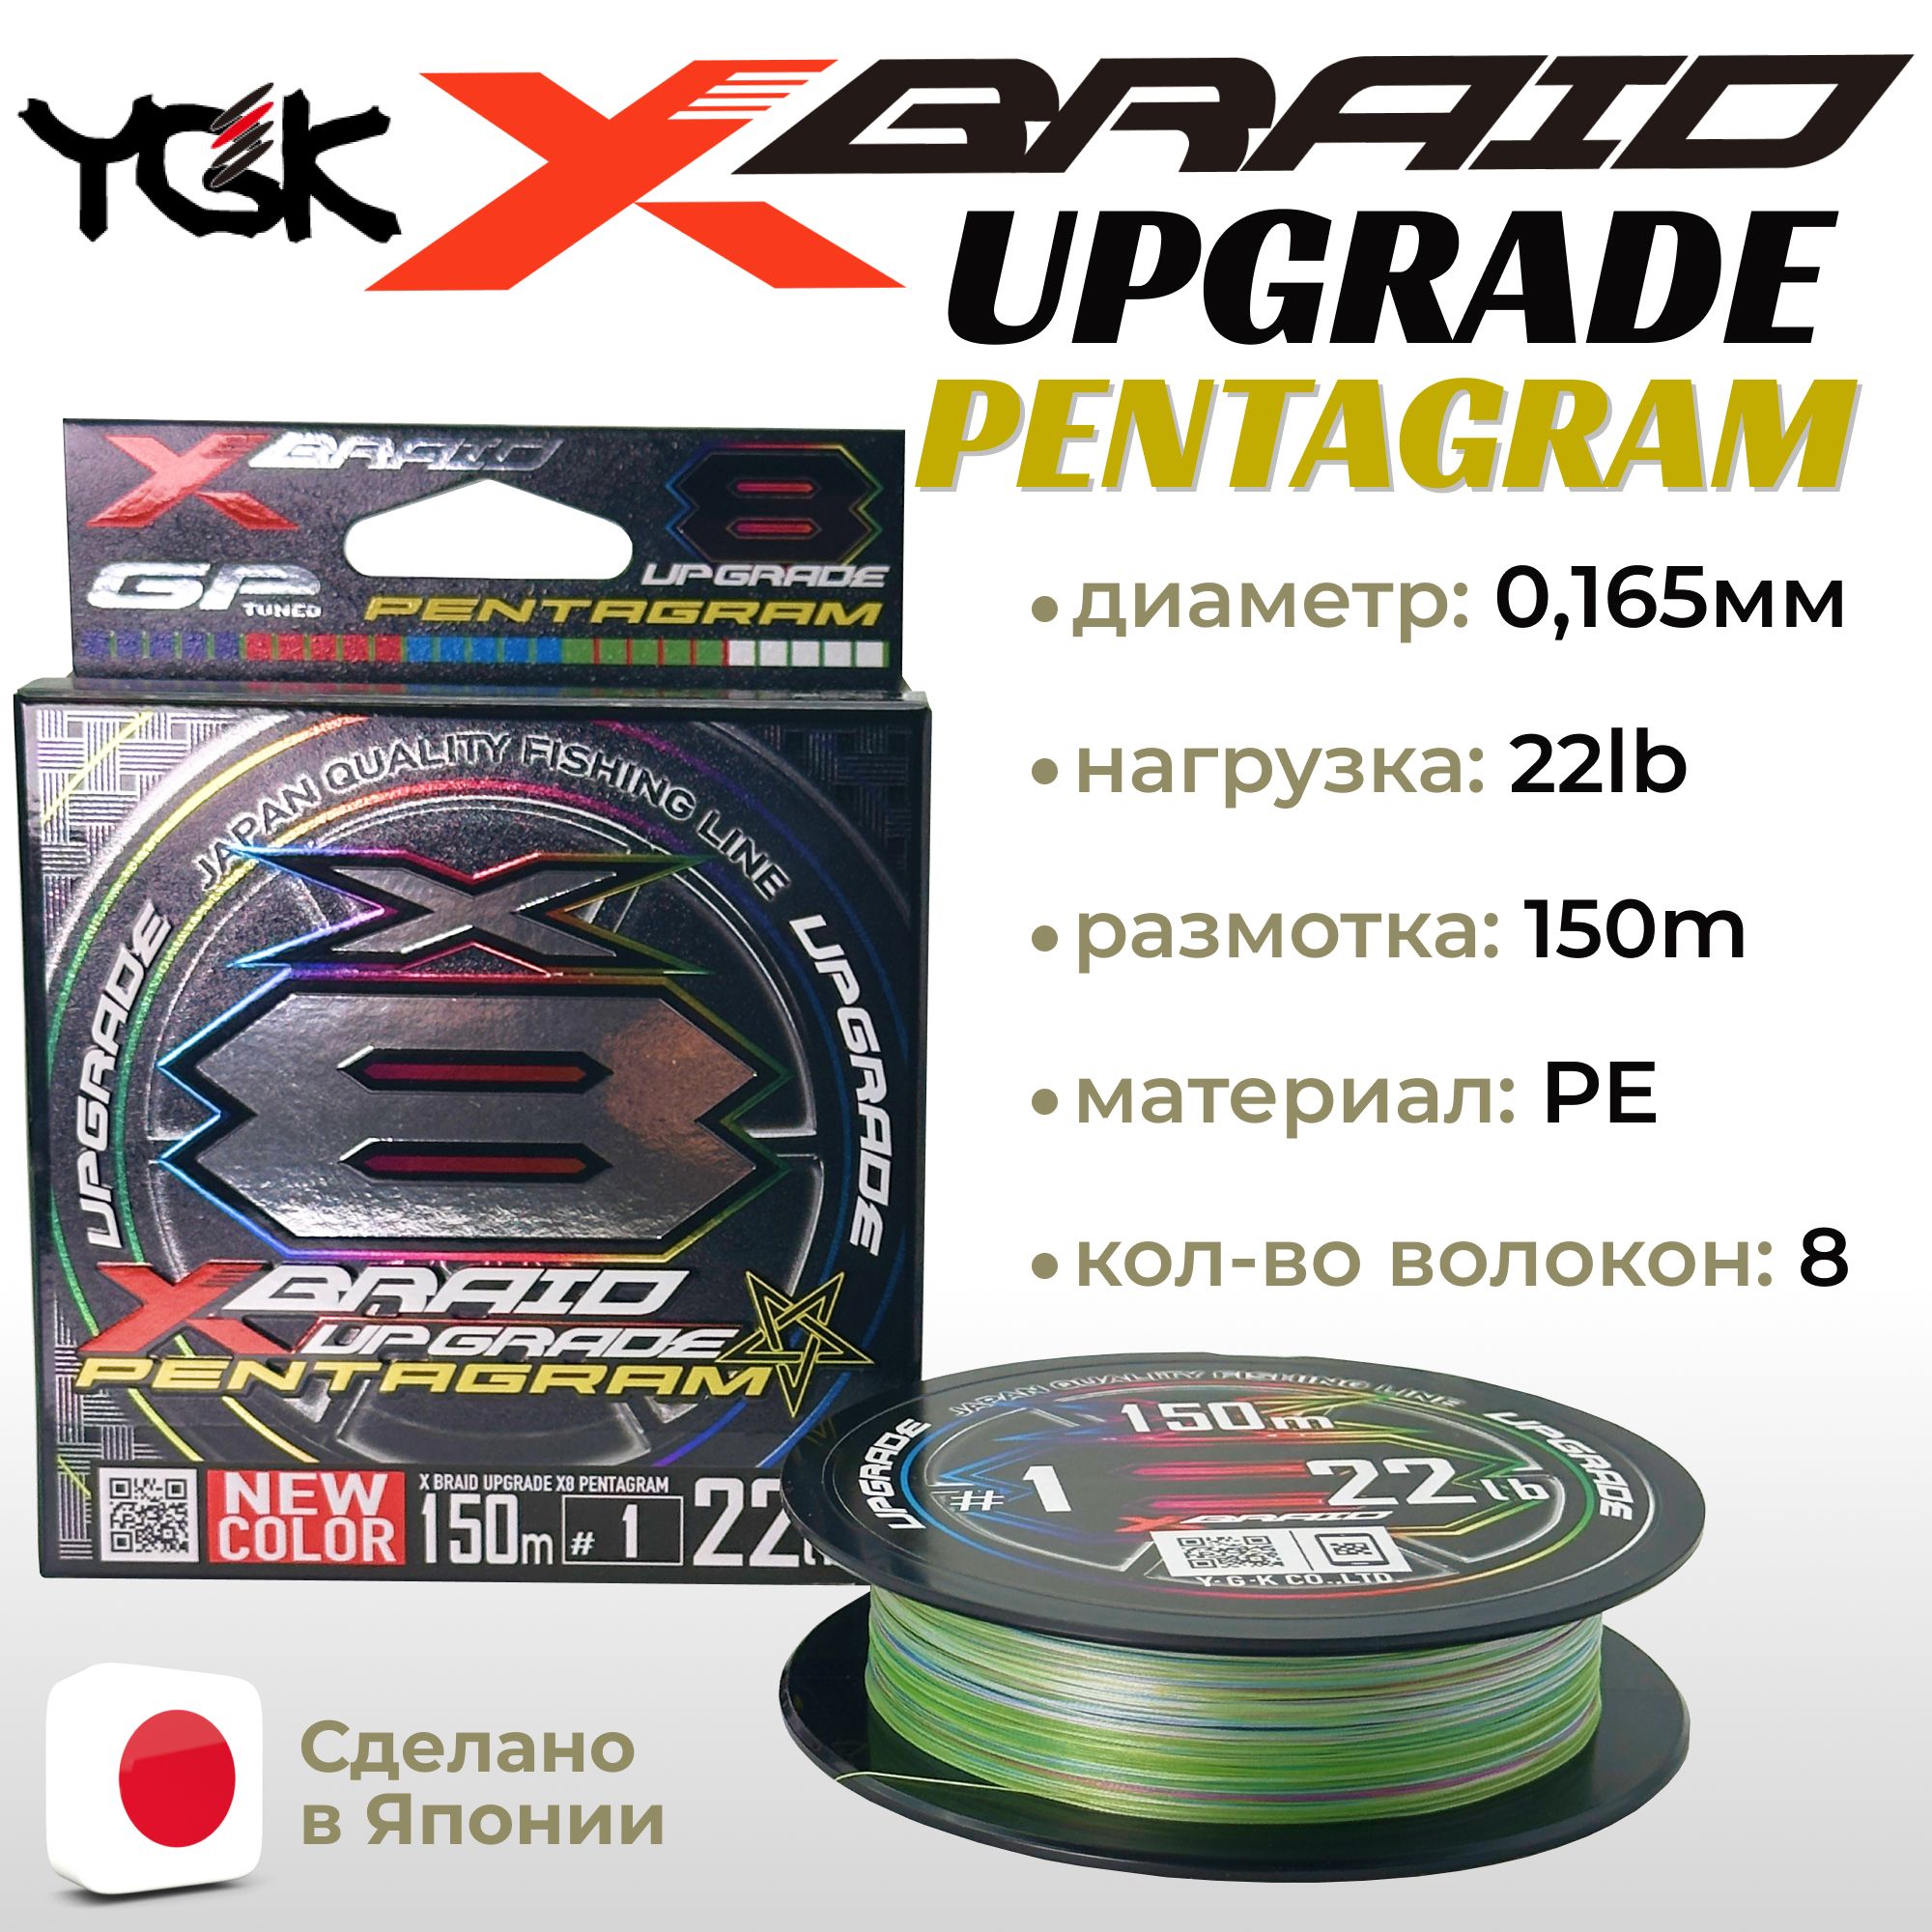 YGK X-Braid Upgrade Pentagram X8